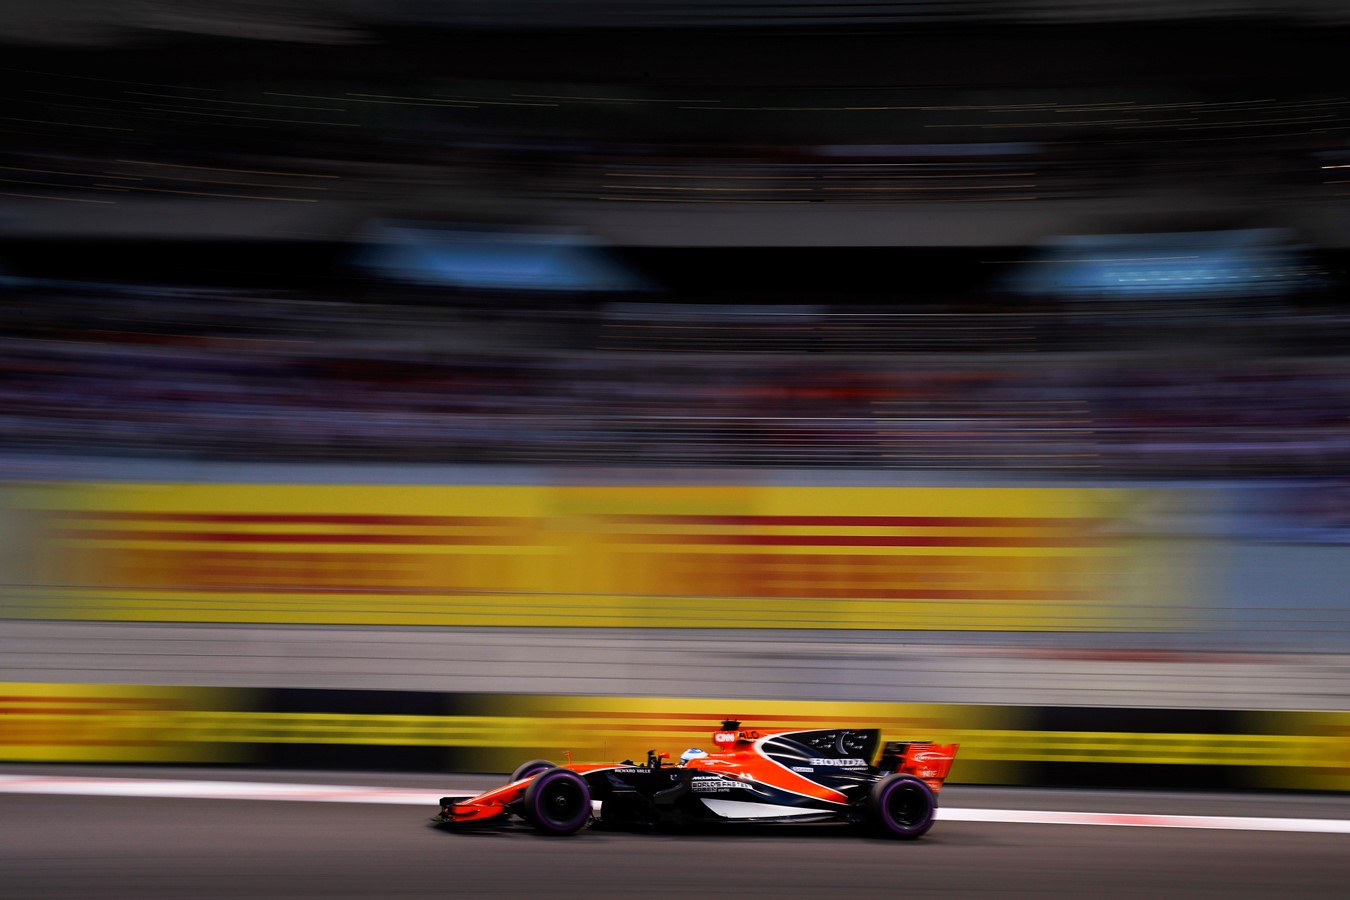 The 2017 season comes to a close for McLaren-Honda